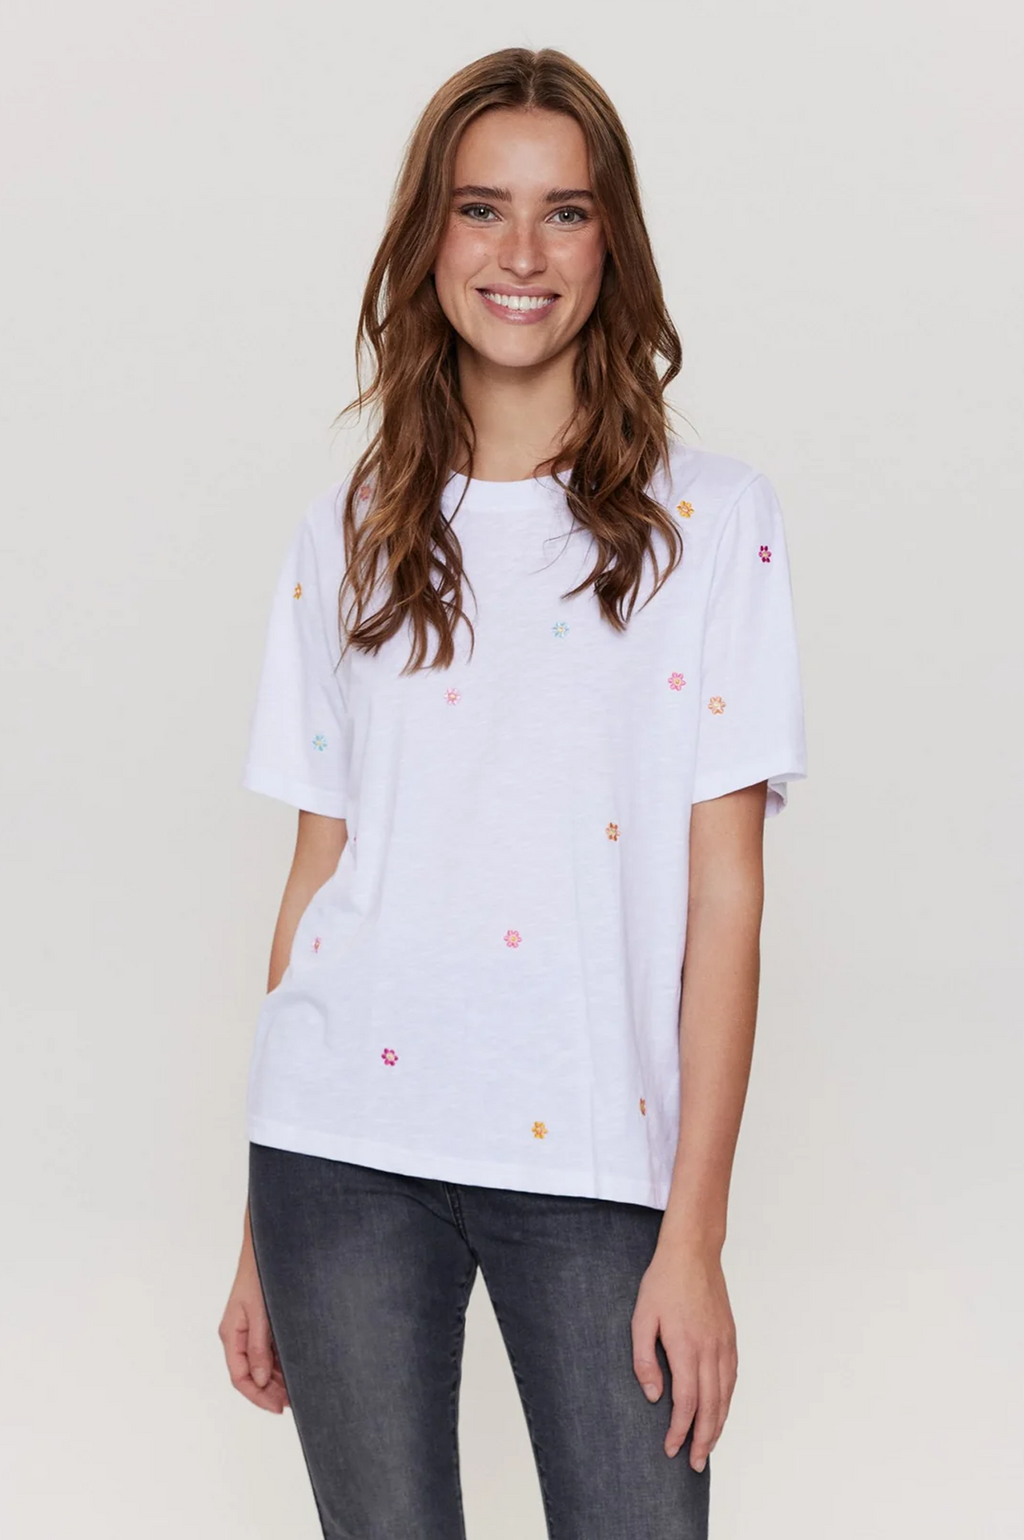 Numph Pilar Bright White T-shirt - The Mercantile London